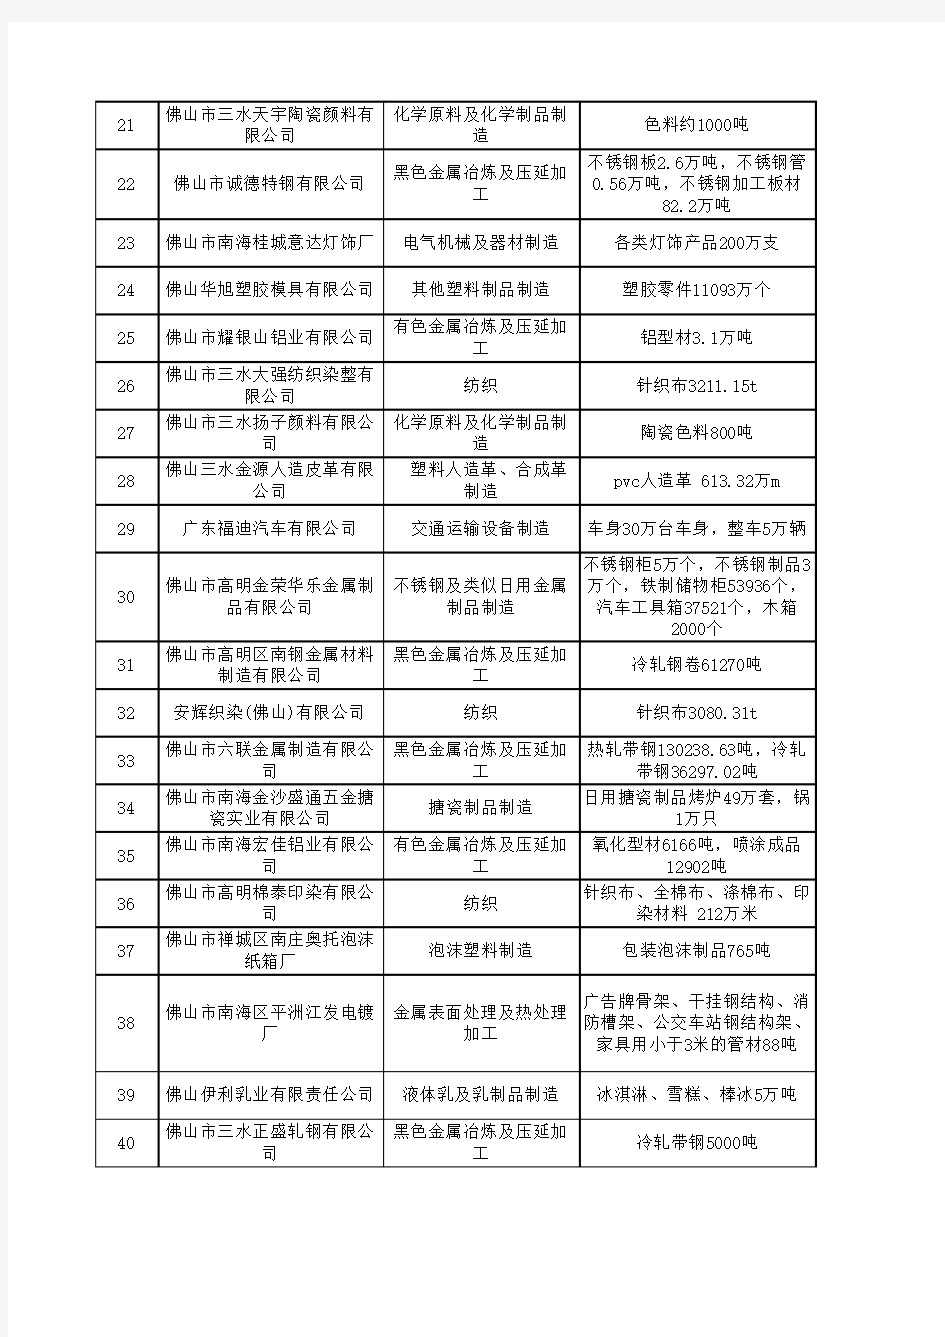 广东省2014年第二季度重点企业清洁生产开展情况统计表